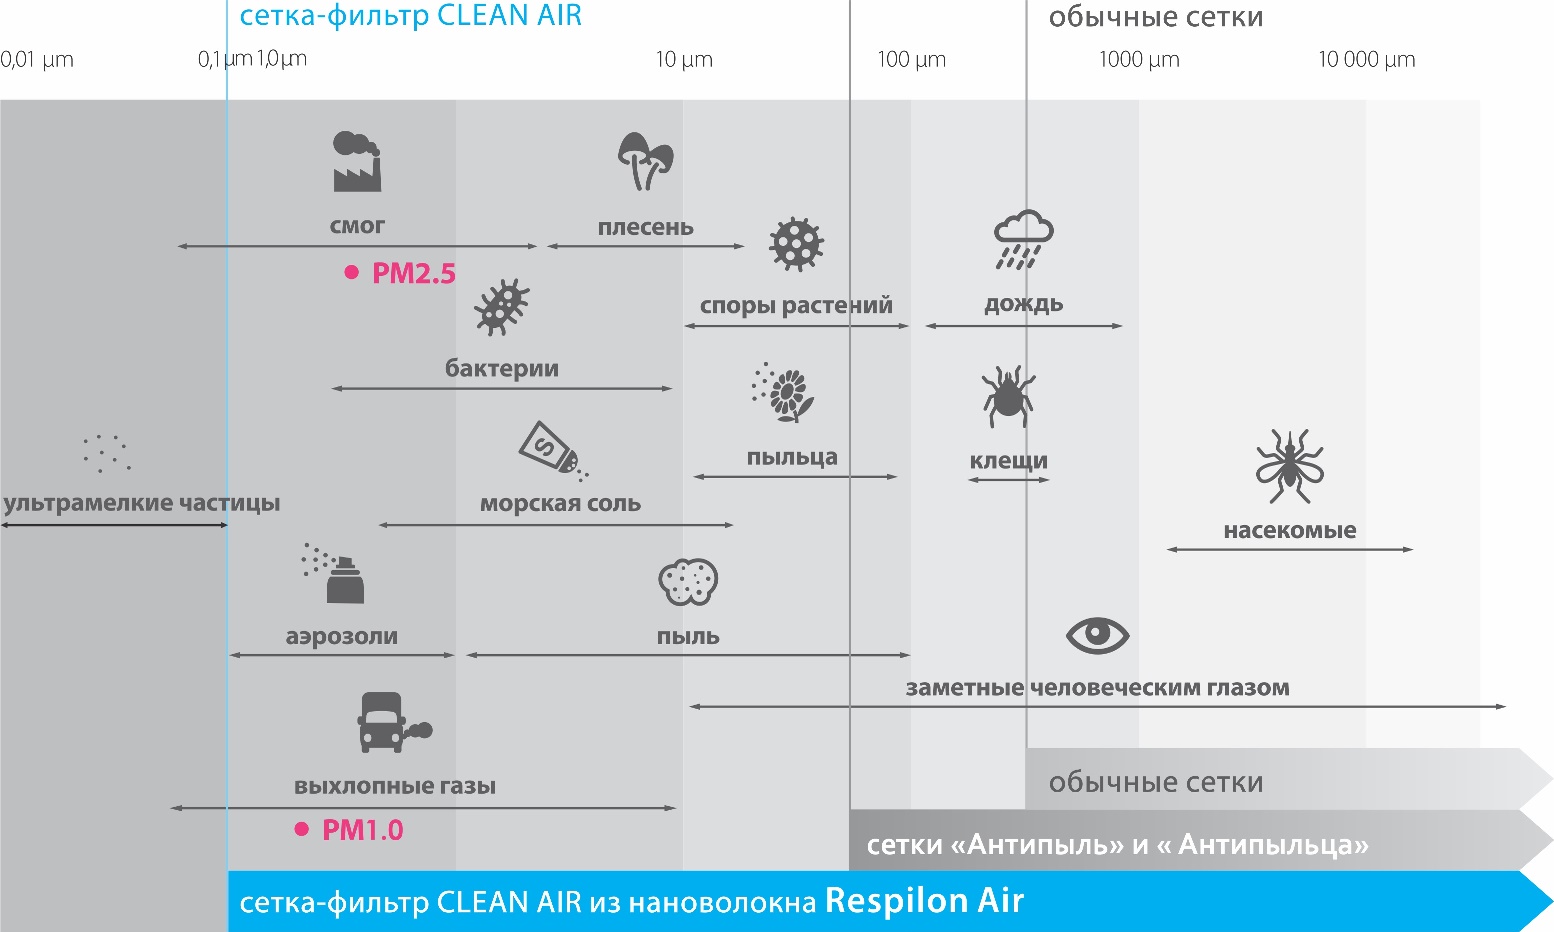 Сравнение характеристик сетки «CleanAir» с сетками антипыль, антипыльца и москитной сеткой